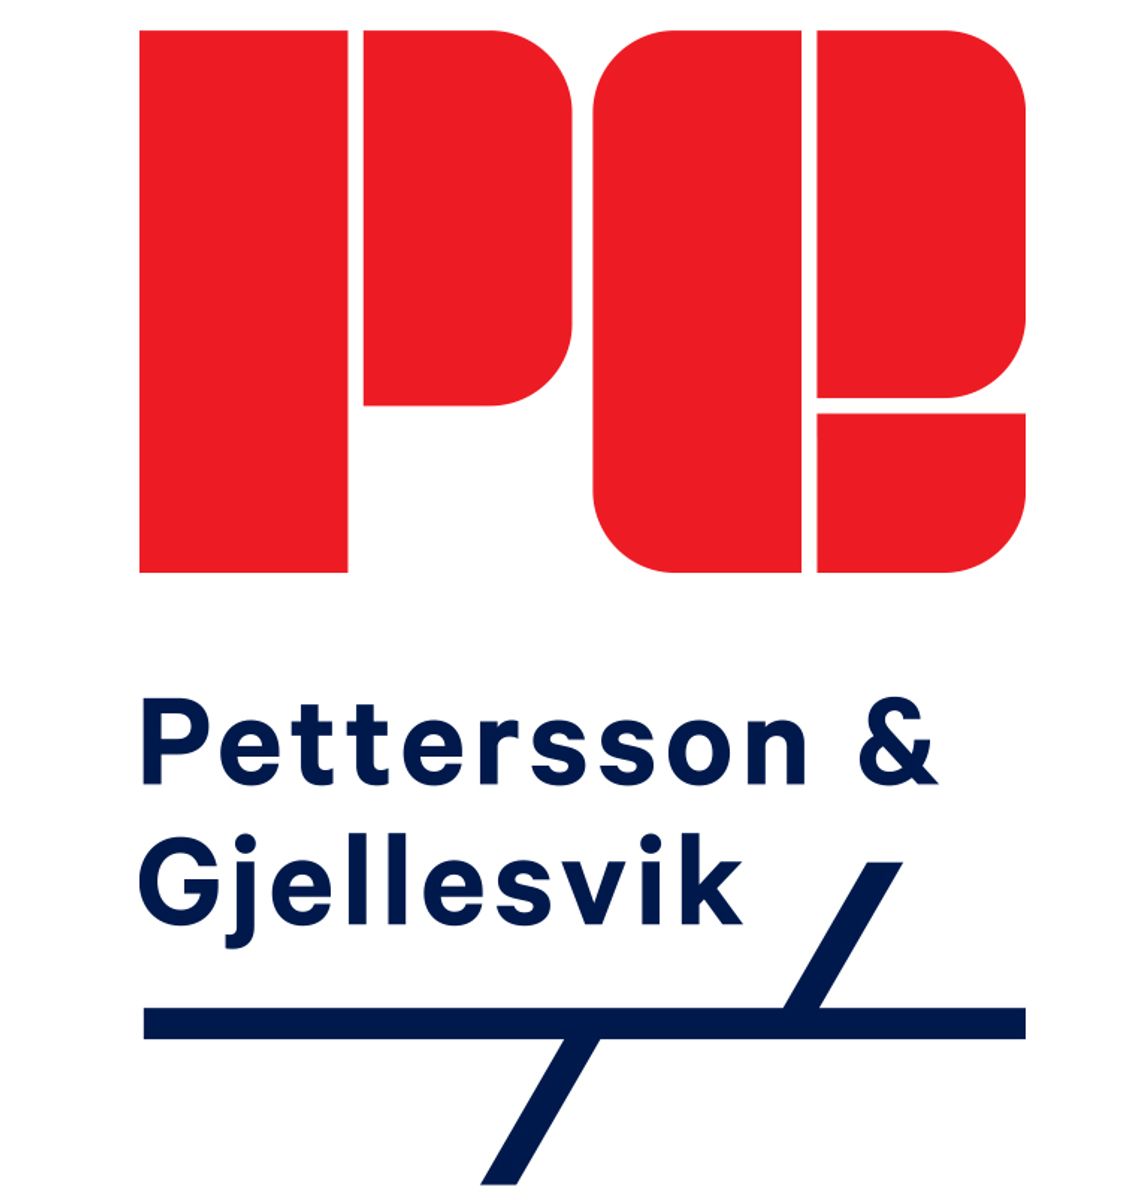 PetterssonGjellesvik